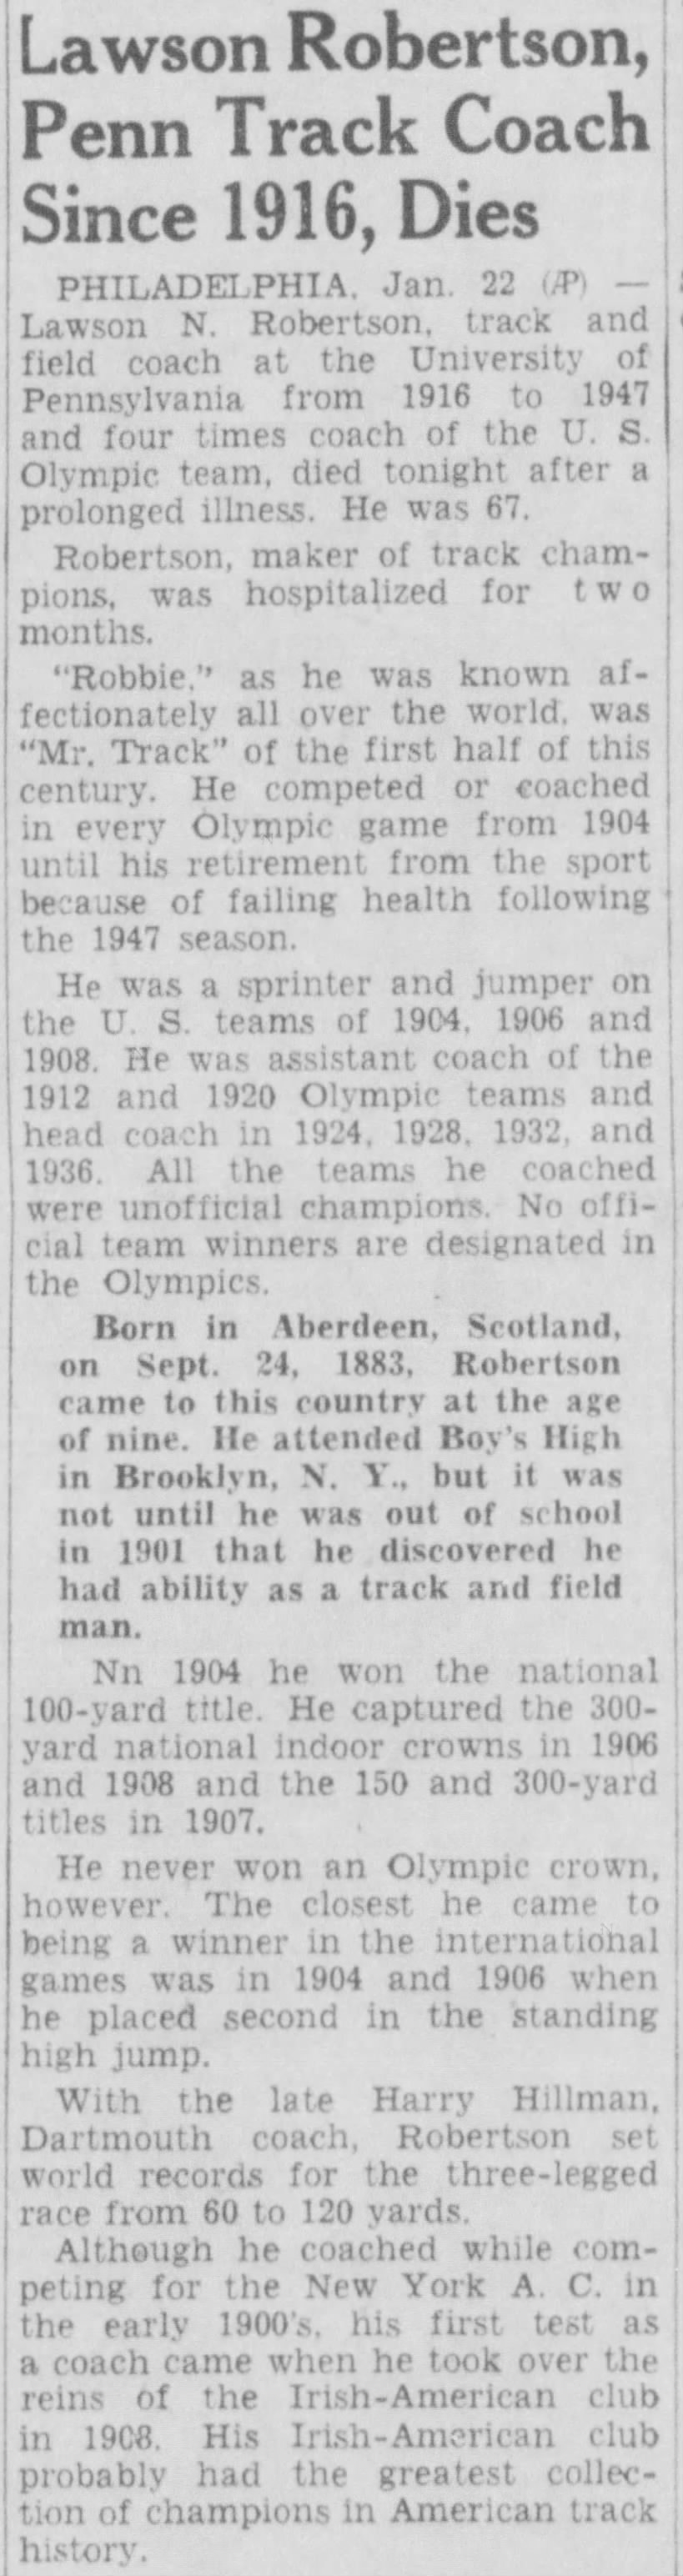 Lawson Robertson, Penn Track Coach Since 1916, Dies